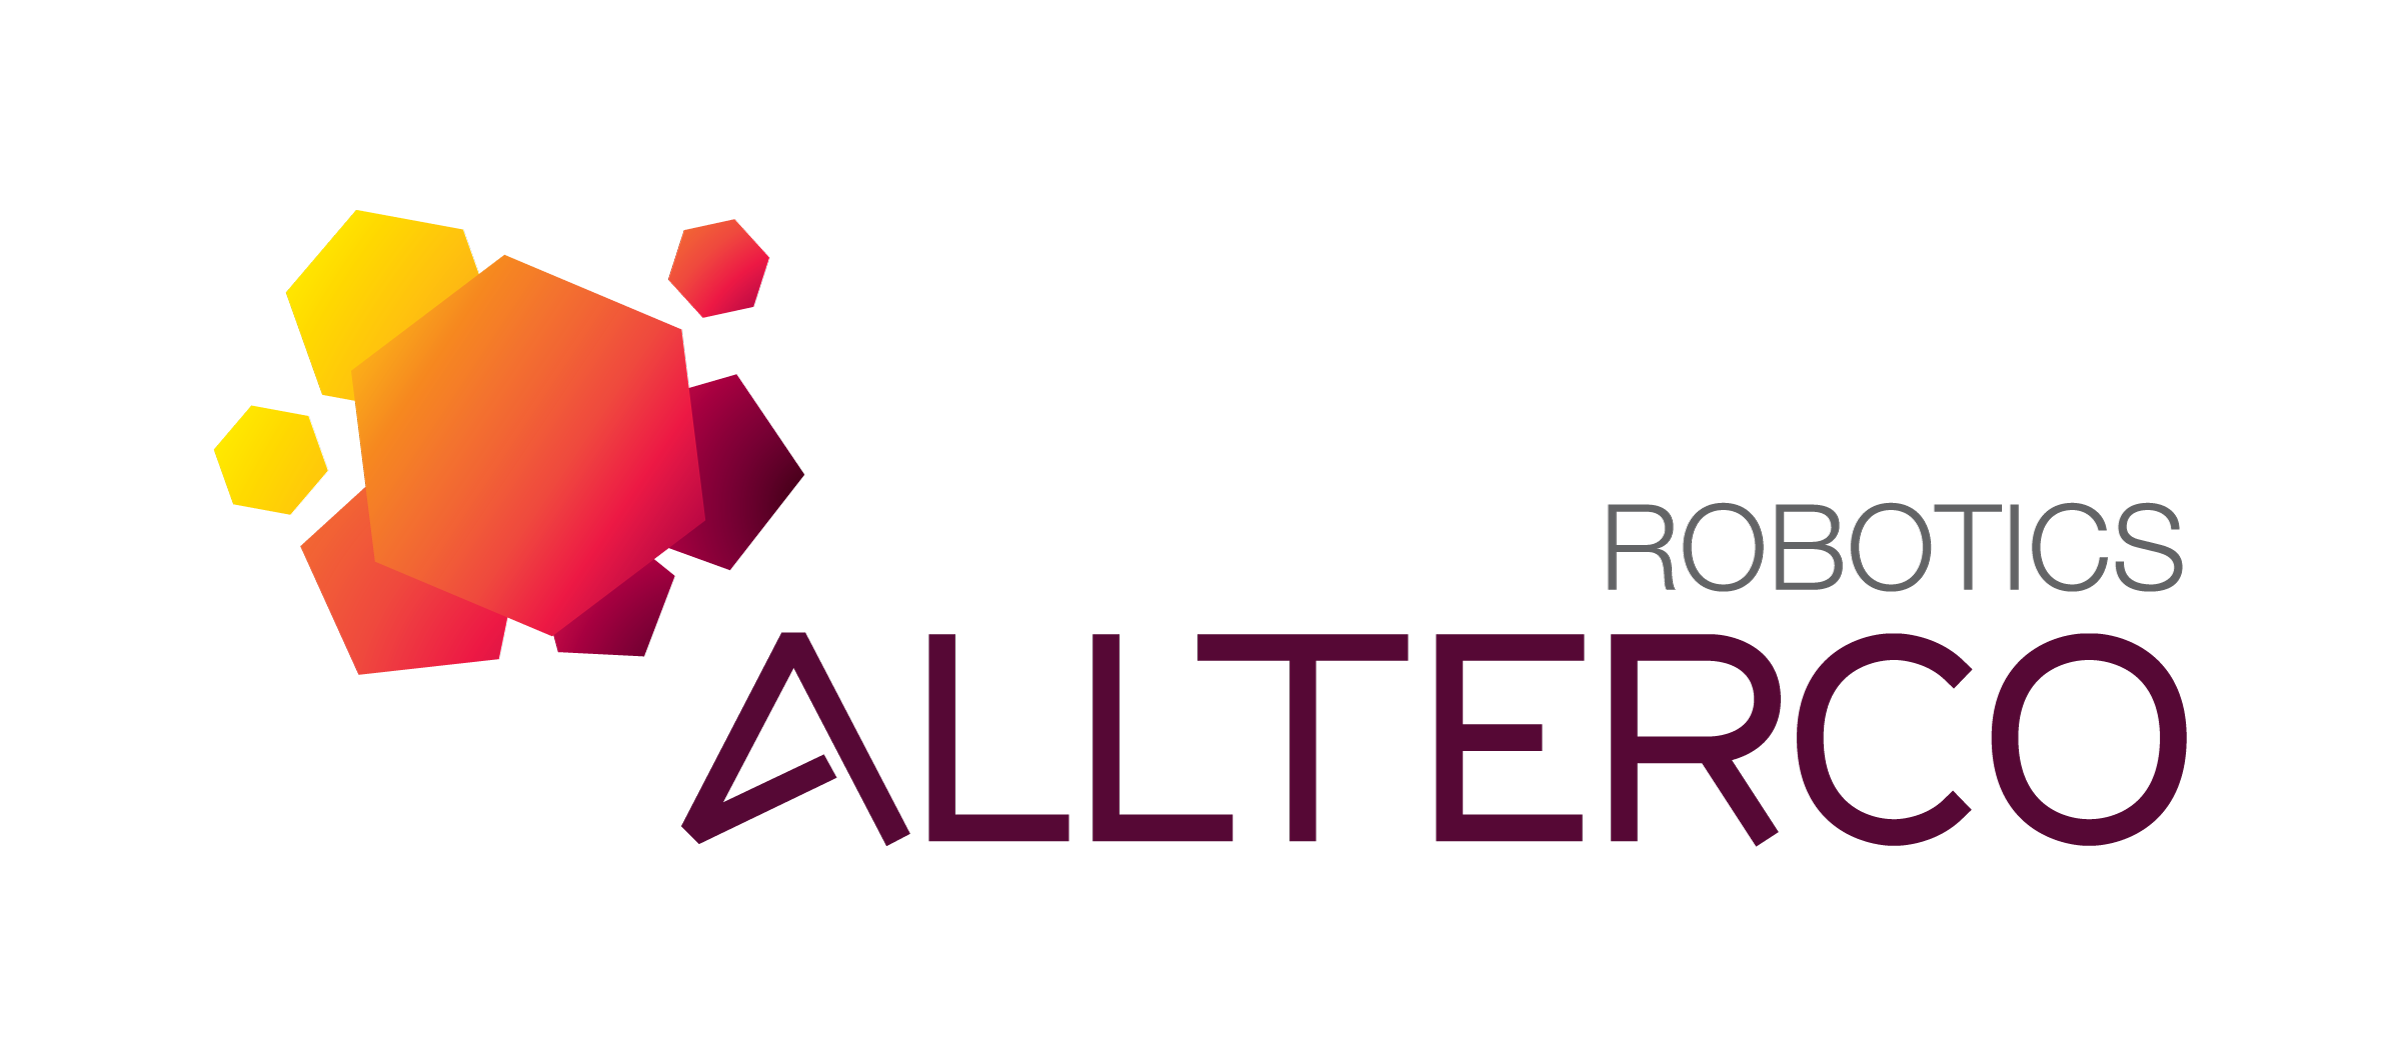 allterco-robotics-logo-002.png